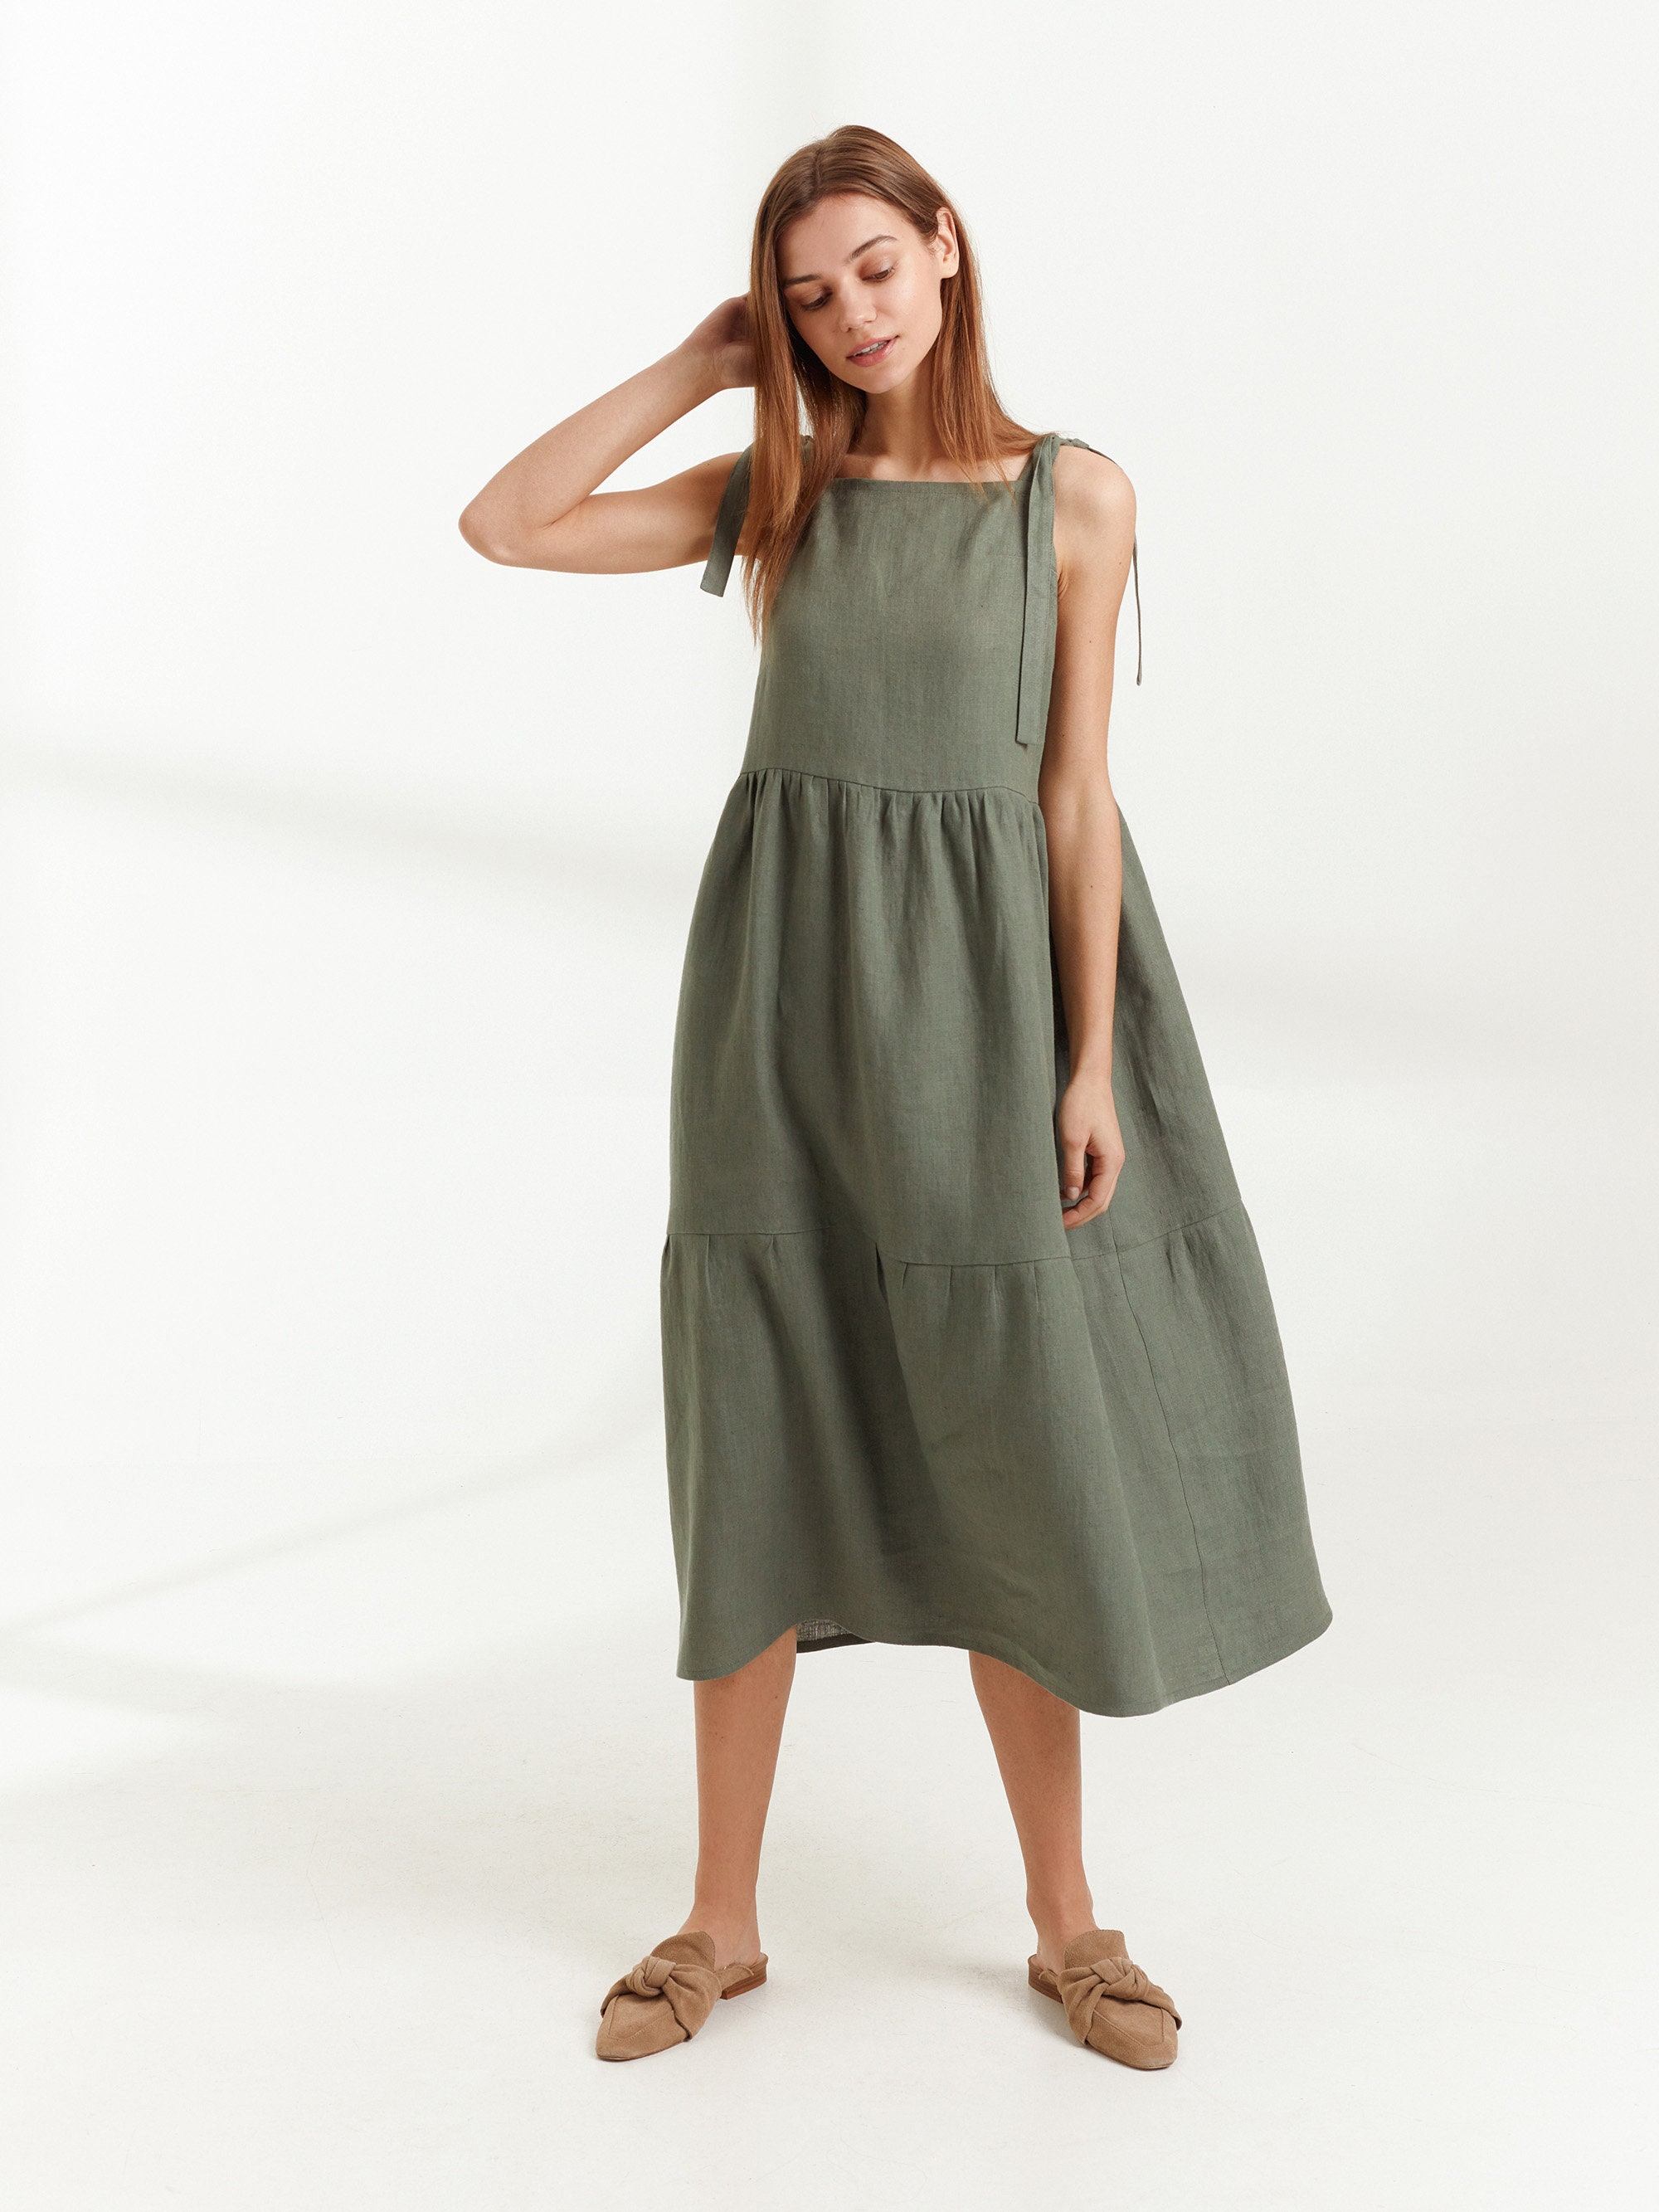 BERRY Linen Dress / Long Summer Dress in Sage Green | Etsy